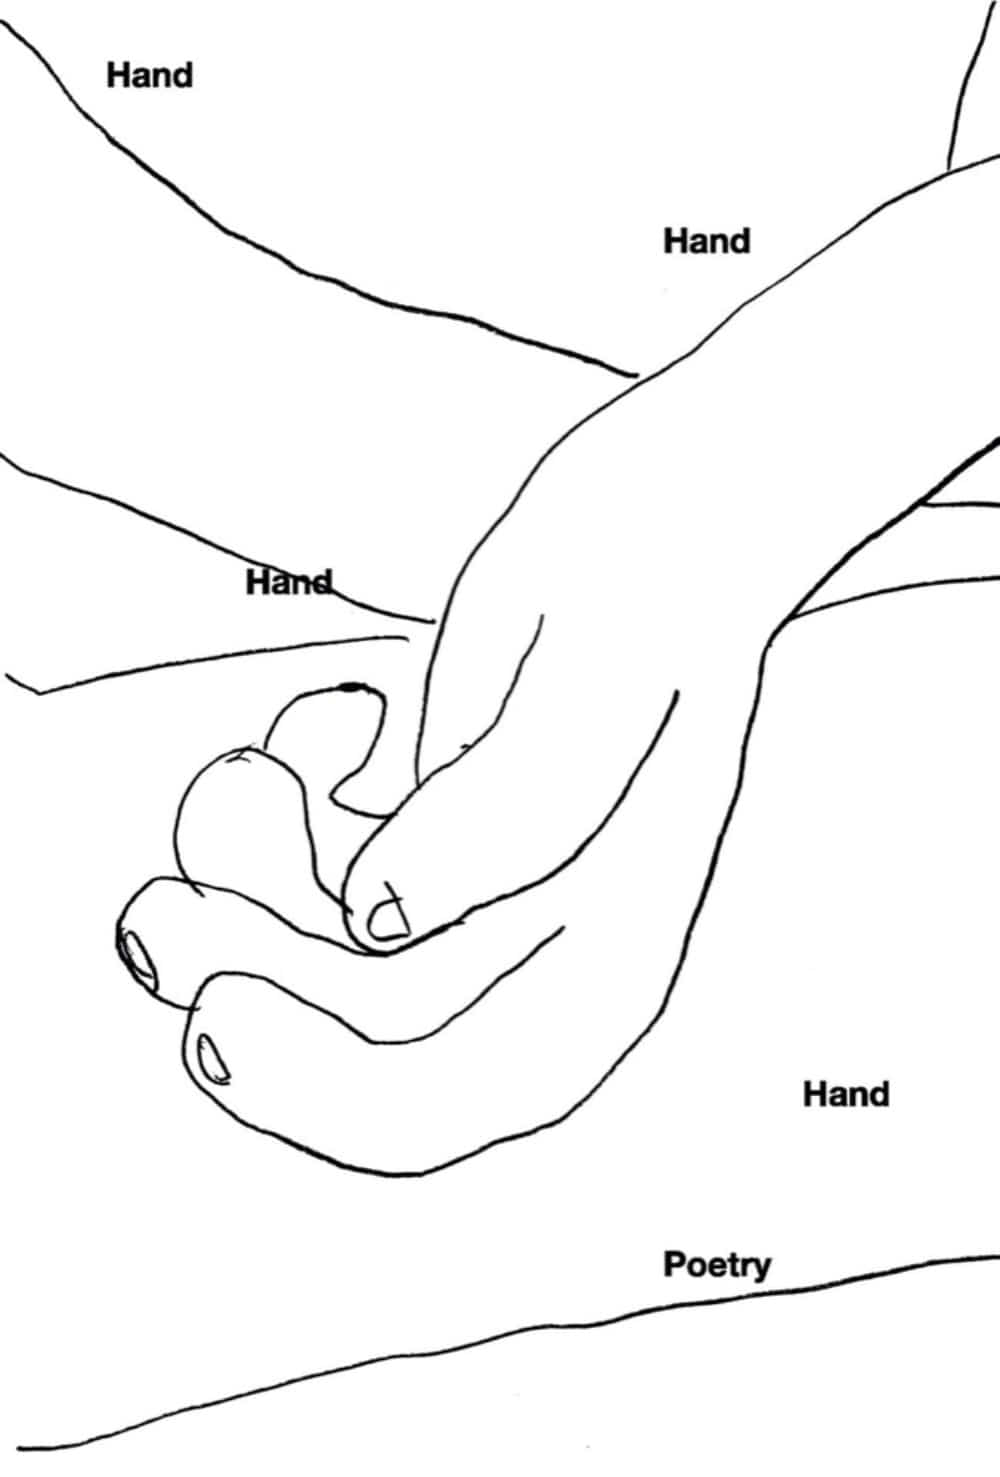 [재입고] Hand, Hand, Hand, Hand, Poetry · NOWWE